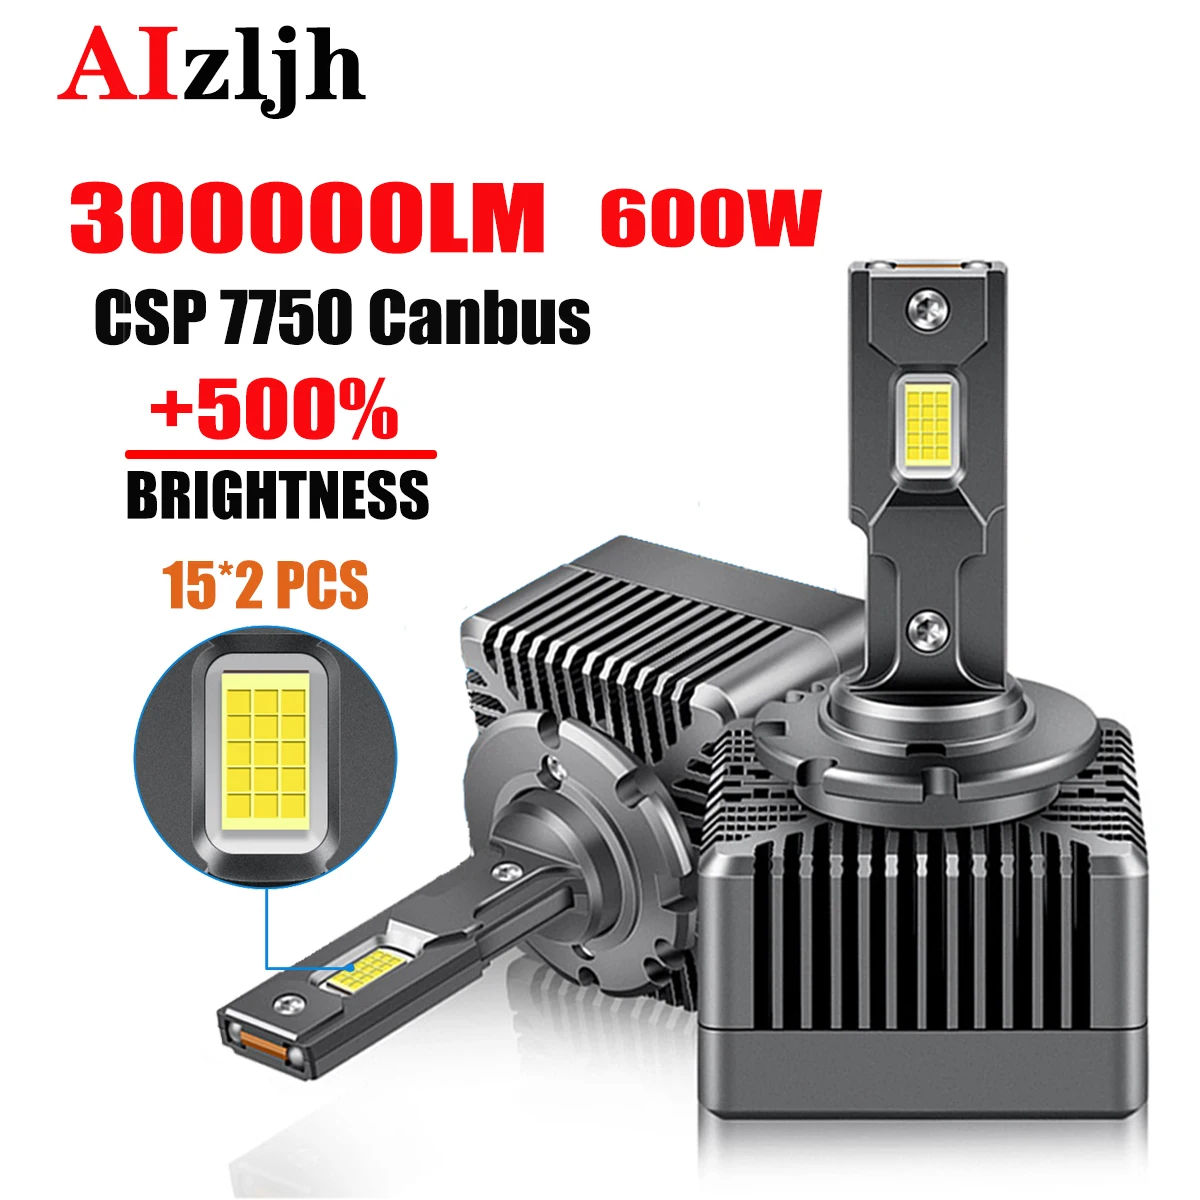 

AIZLJH 6000K Car LED Headlight Copper Tube High Bulb Lamps D1S D2S D3S D4S 300000LM 600W CSP 7750 Canbus Headlamps 12V Lights